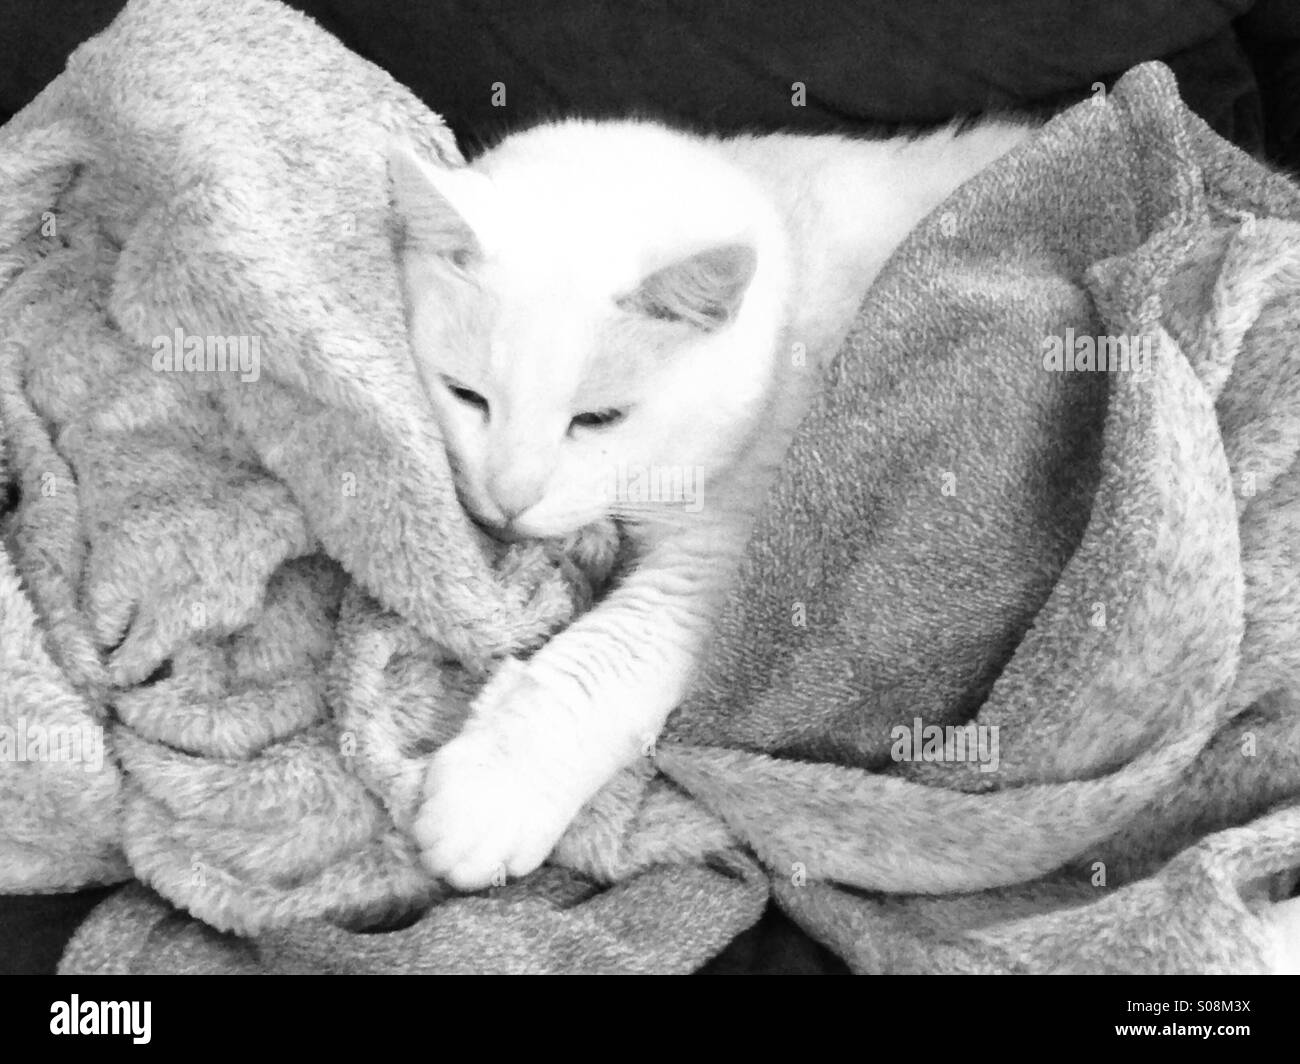 White cat in blanket Stock Photo